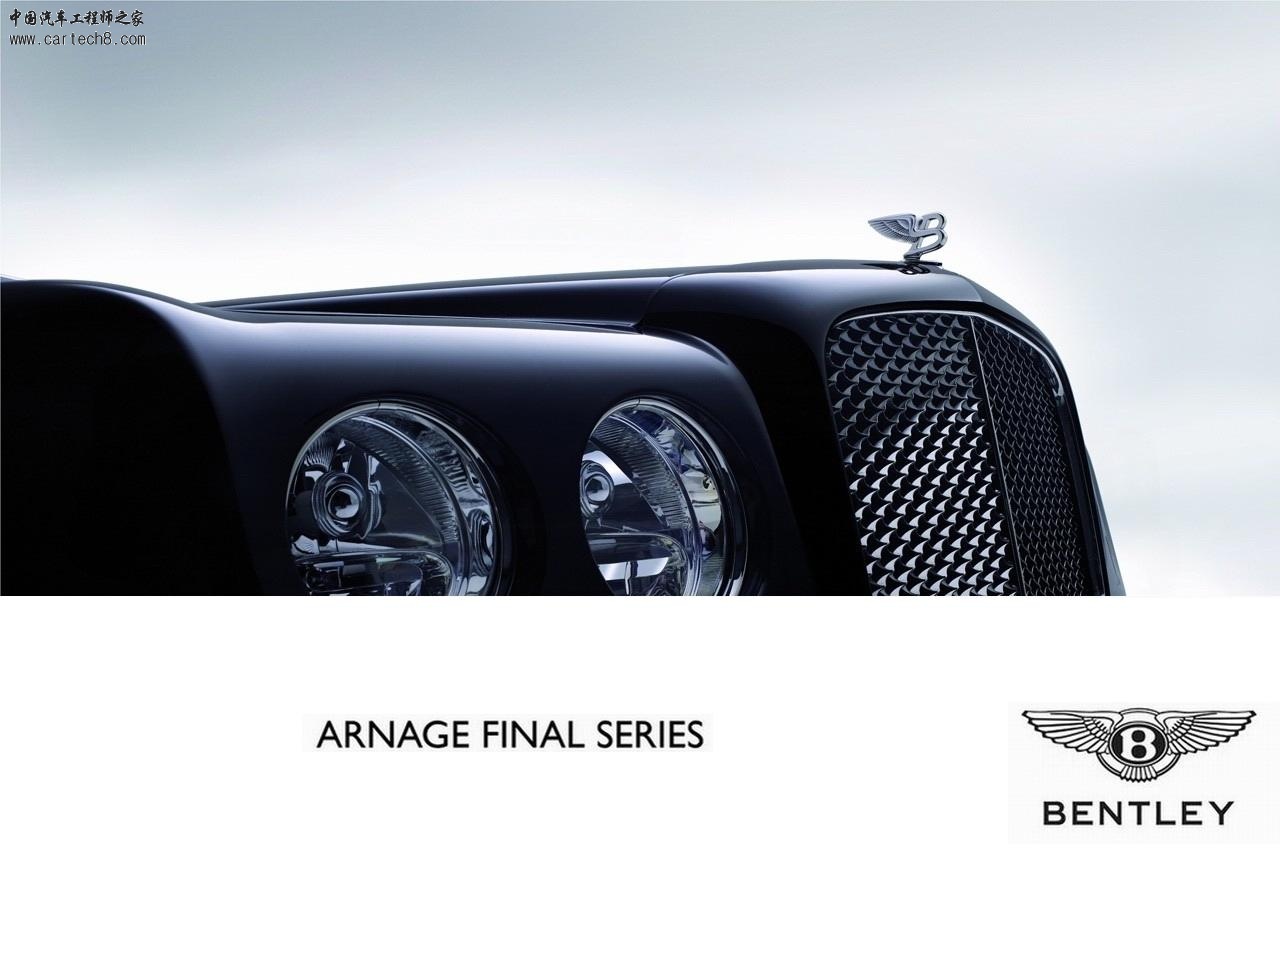 2009-Bentley-Arnage-Final-Series-Hood-1280x960.jpg